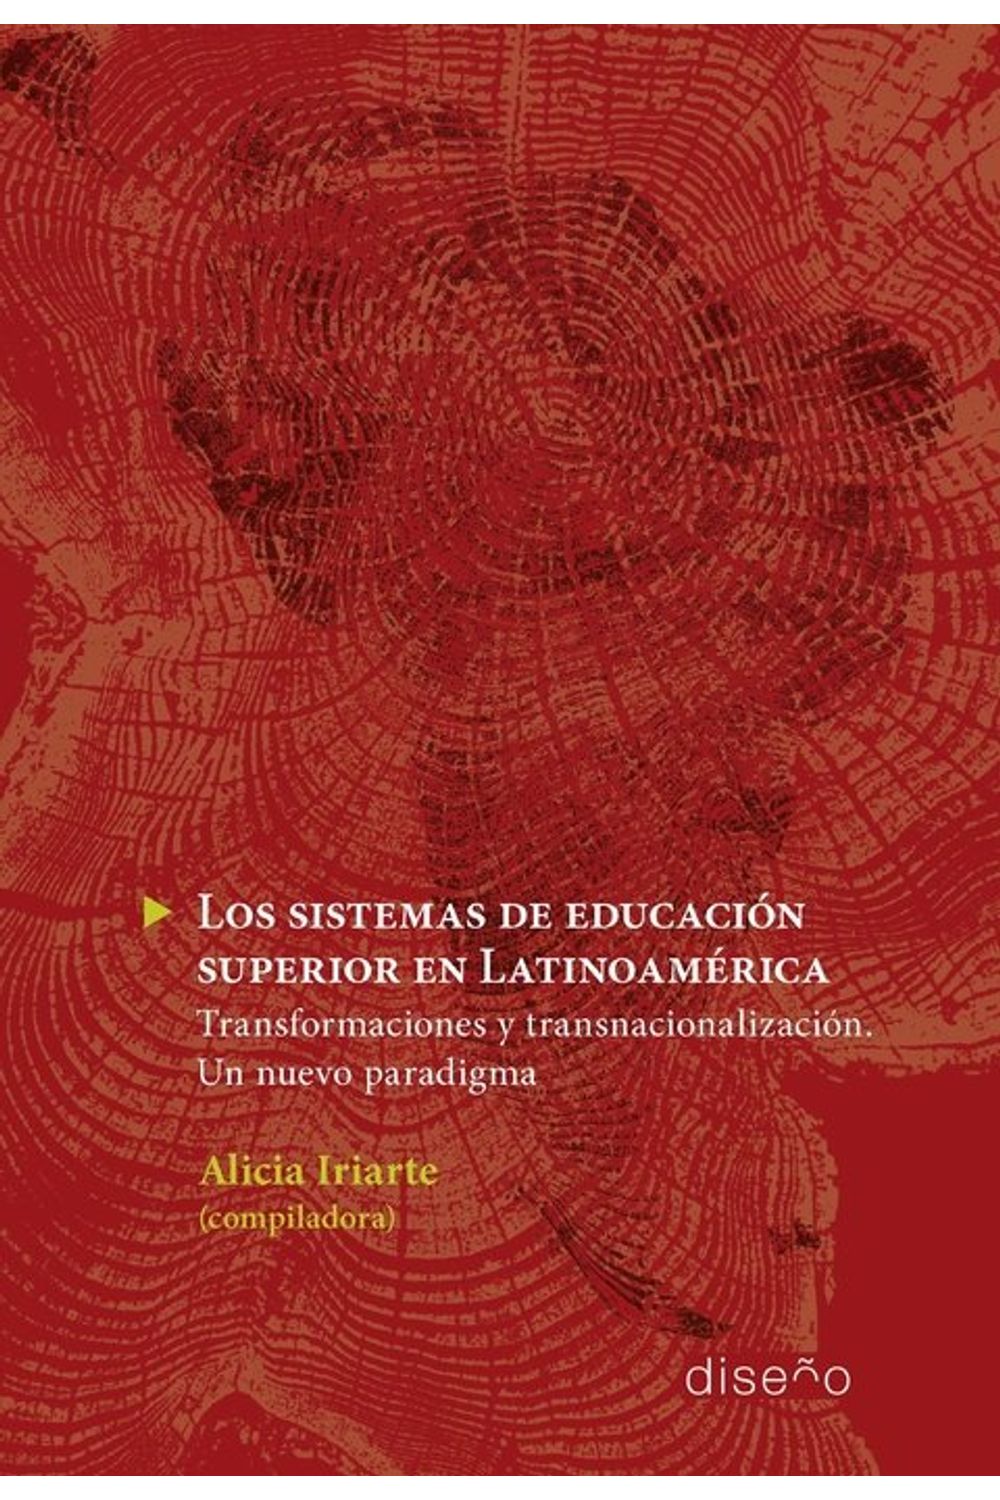 bm-los-sistemas-de-educacion-superior-en-latinoamerica-nobukodiseno-editorial-9789874160638